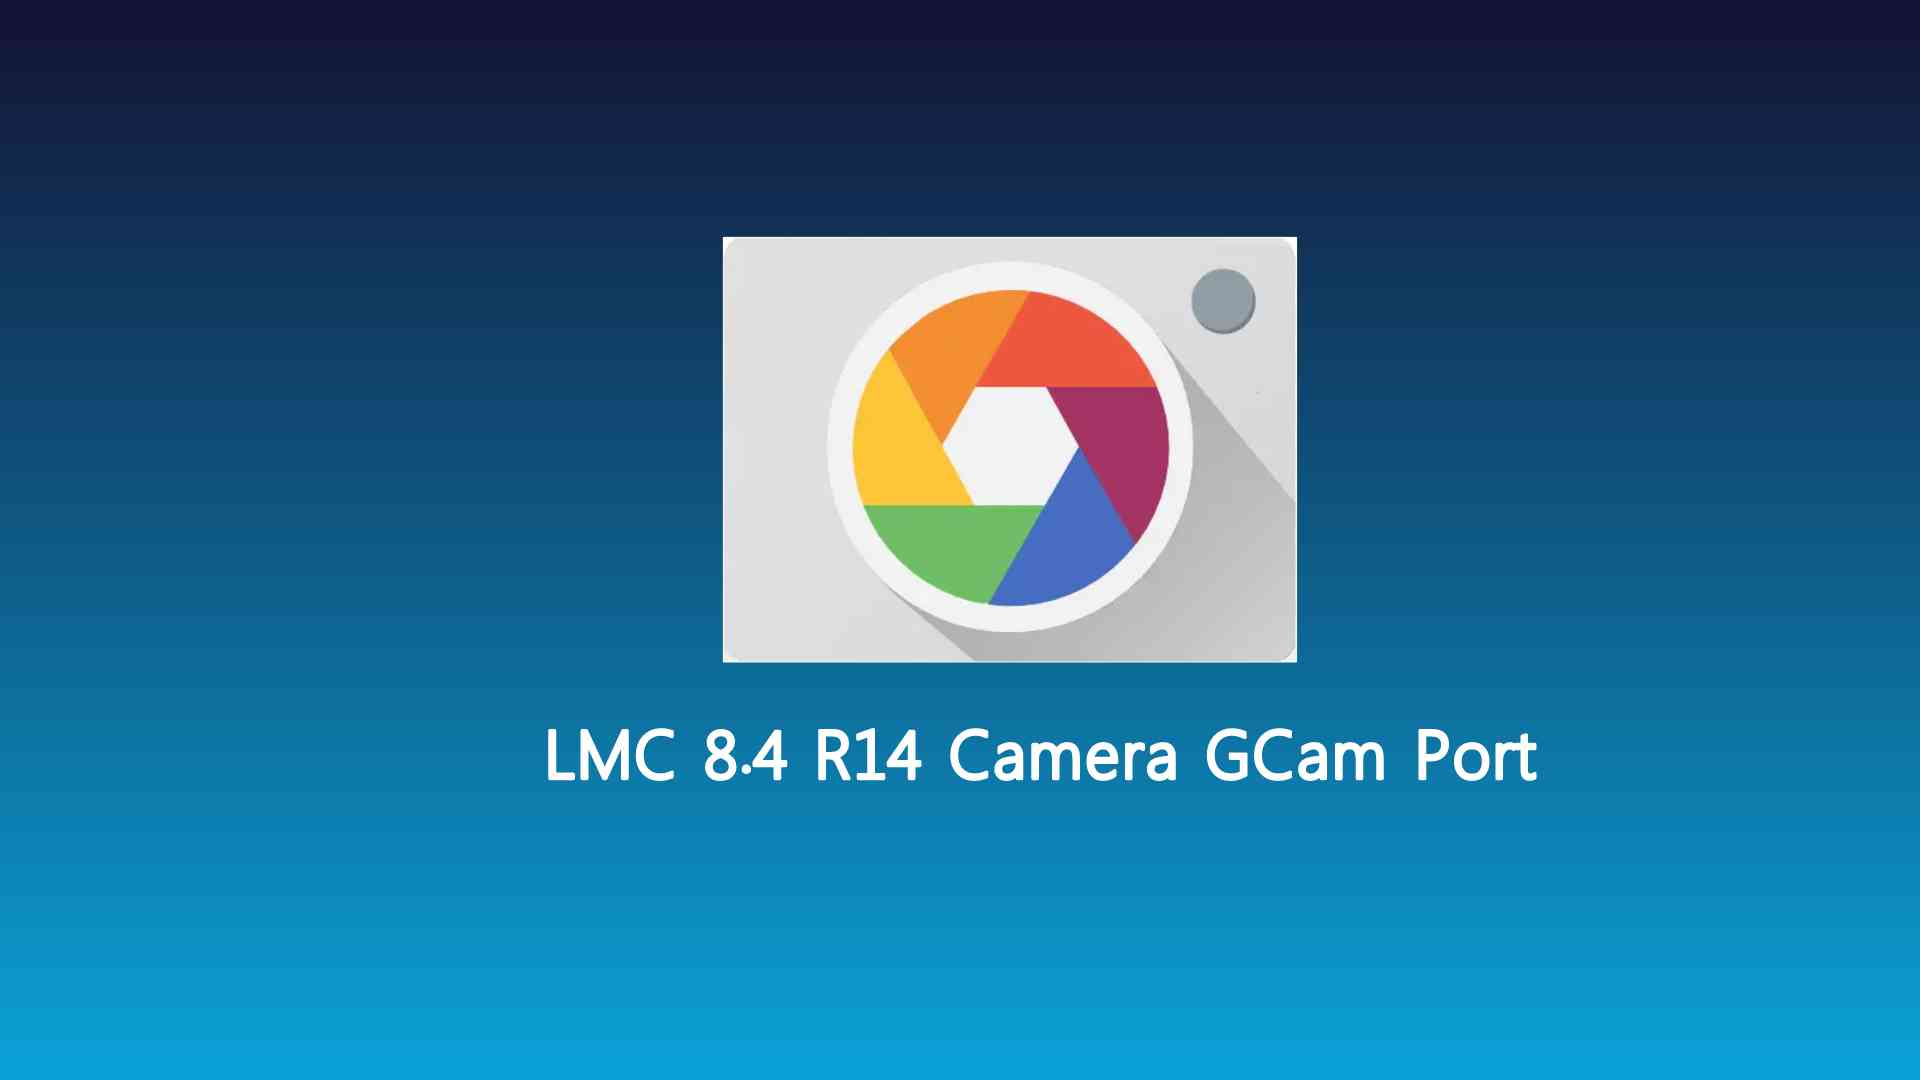 LMC 8.4 R14 Camera GCam Port